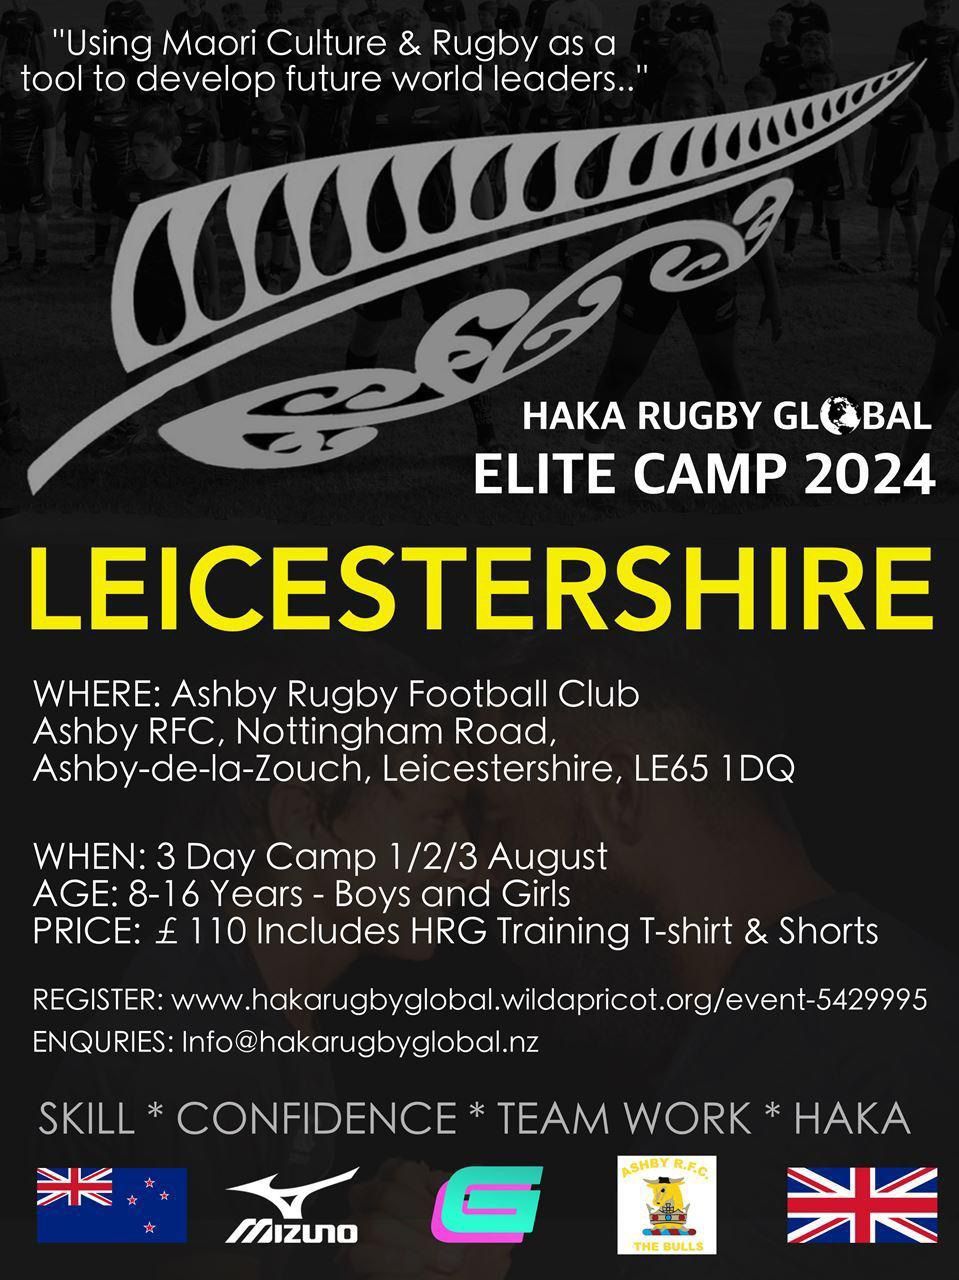 Haka Rugby Global Elite Camp 2024